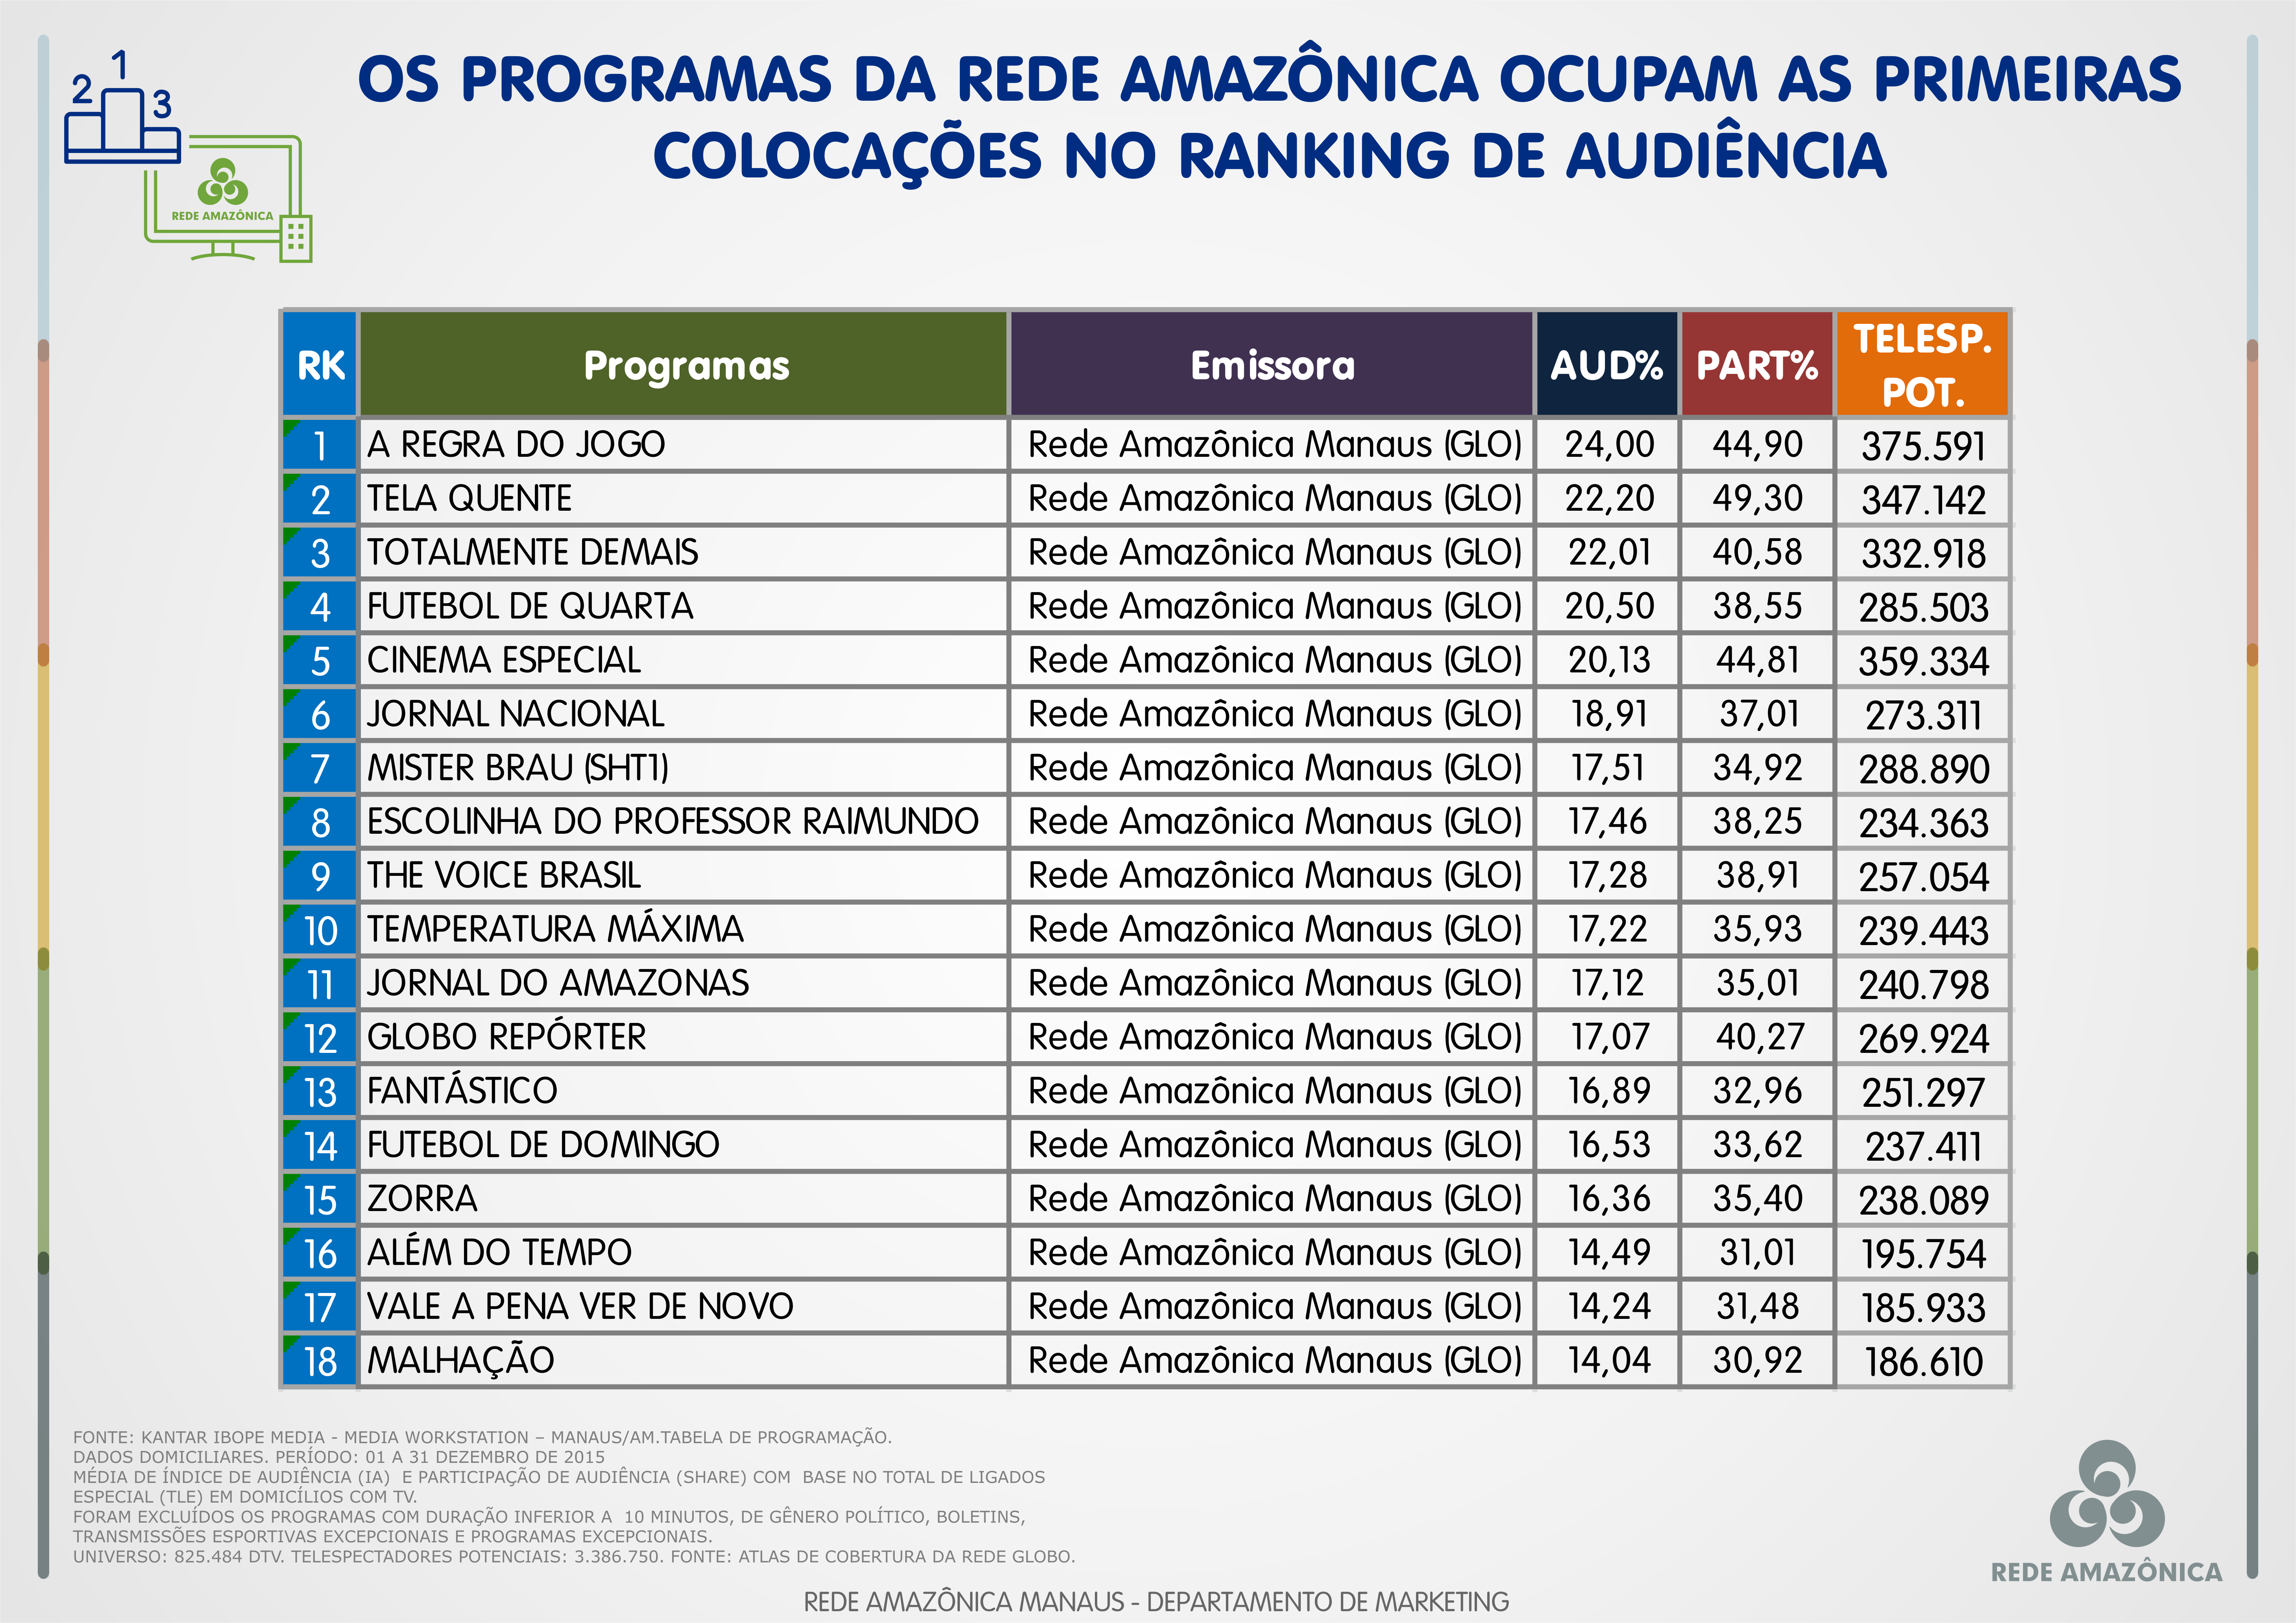 Rede Amazônica: veja o ranking geral de programas de dezembro de 2015 (Foto: Rede Amazônica)